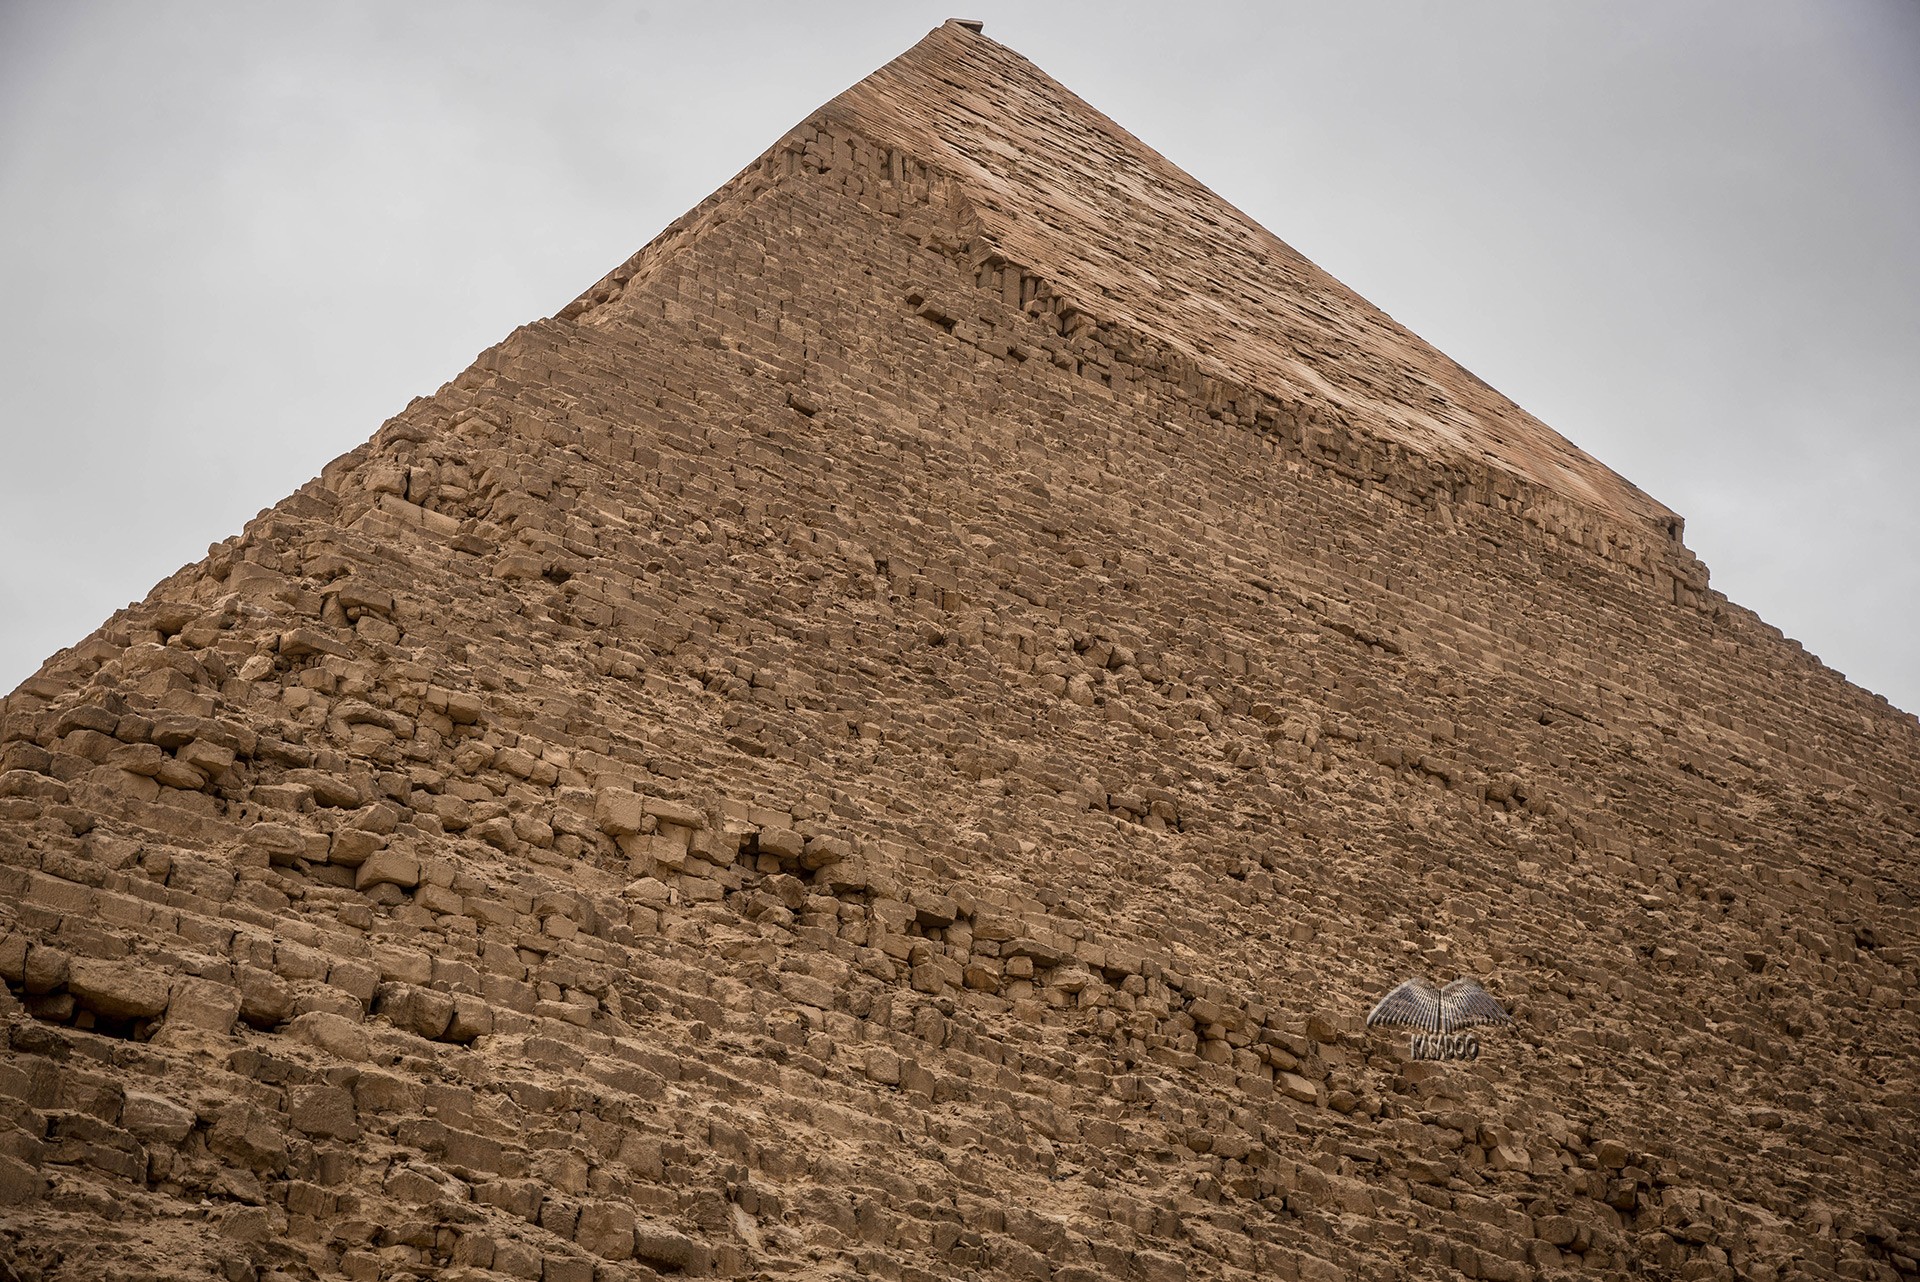 Vista de primer plano de la parte superior de la pirámide